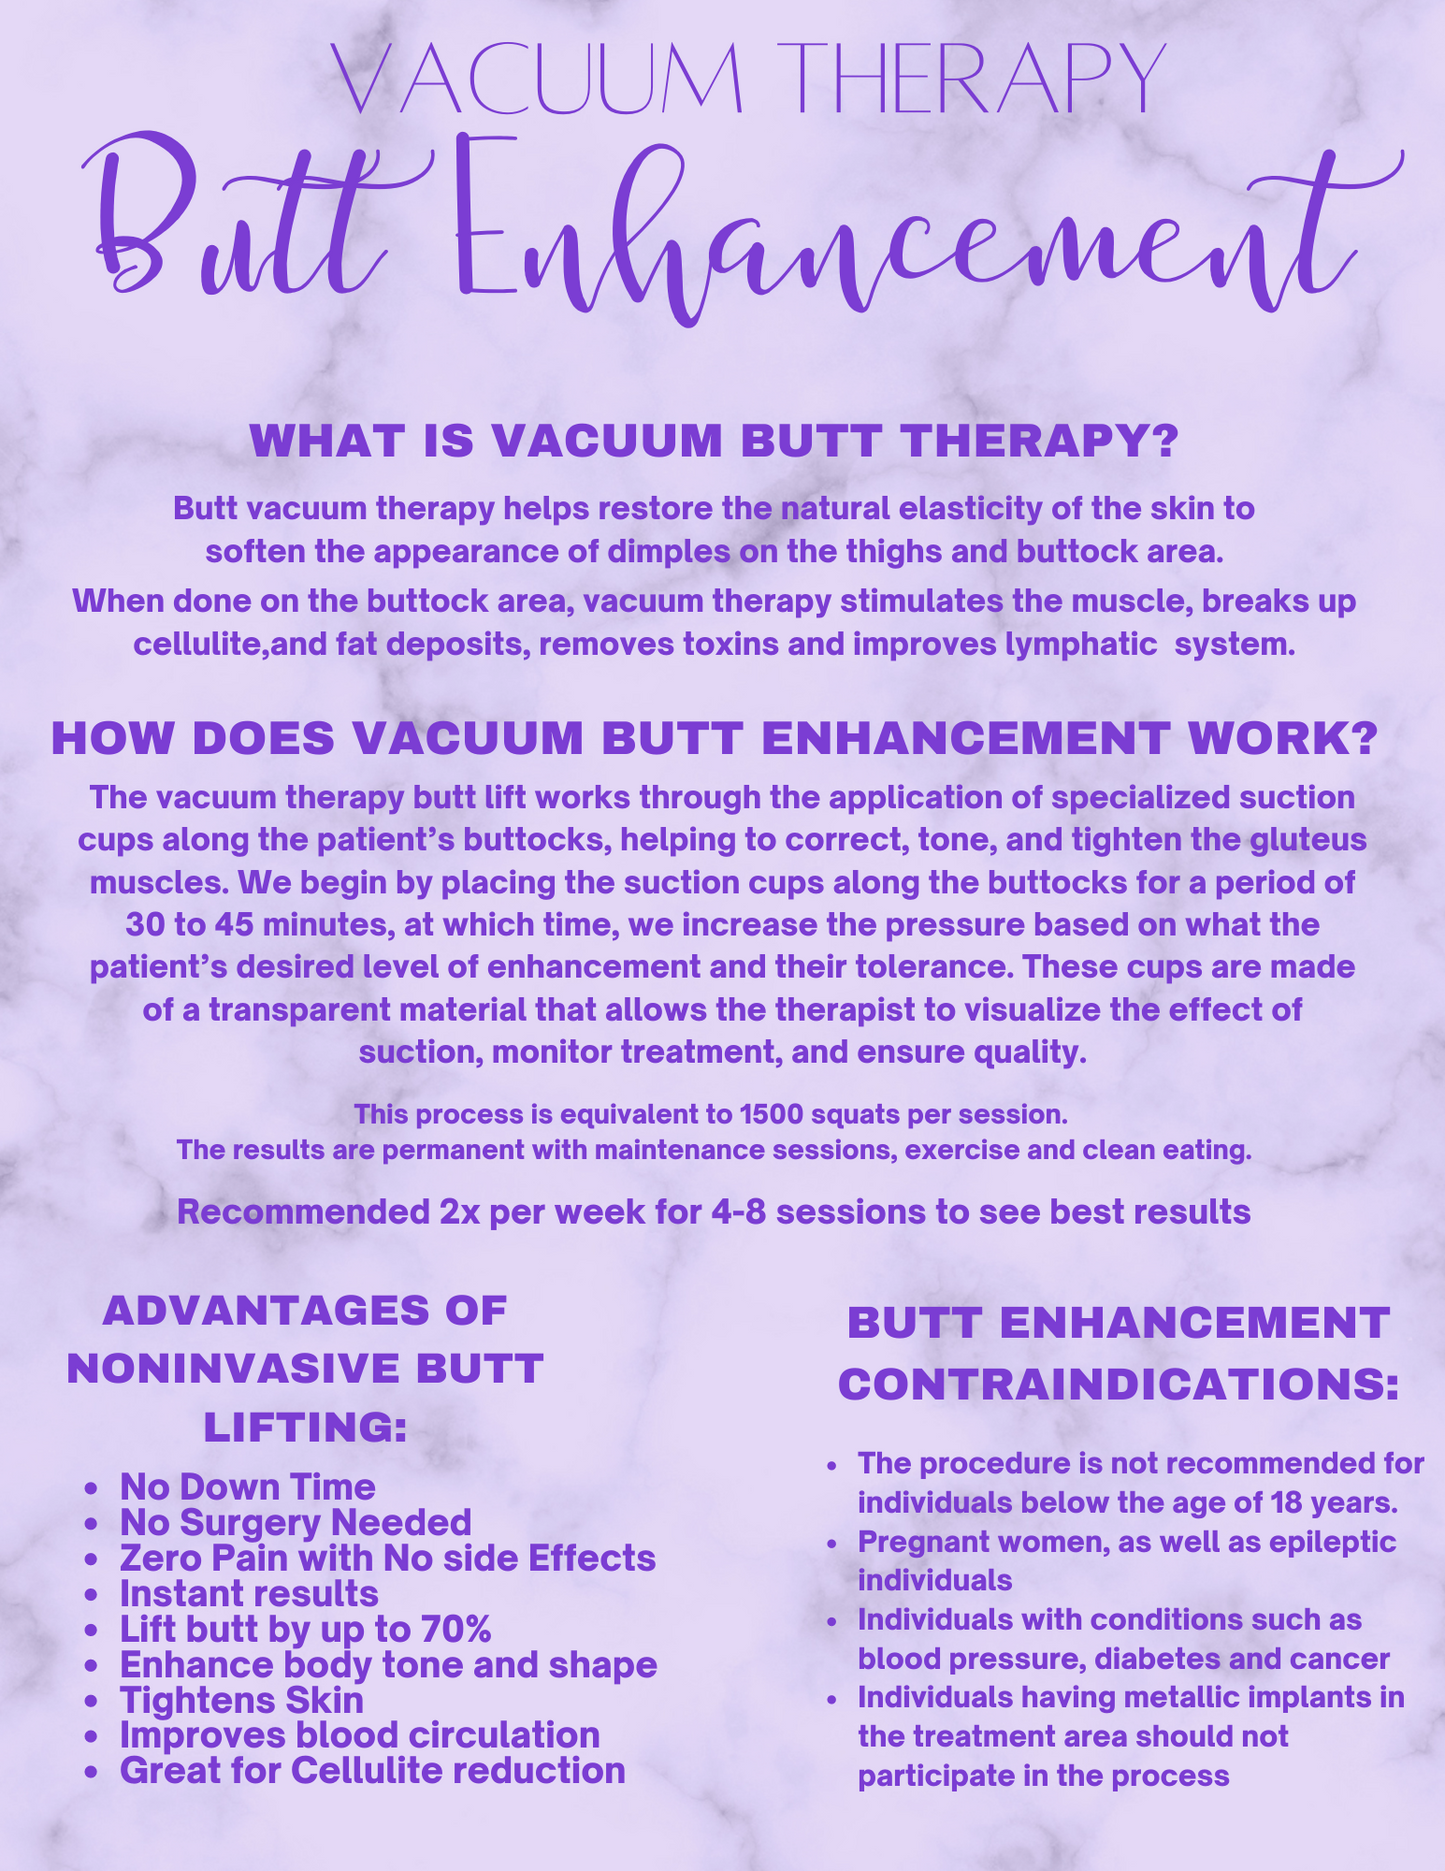 Butt enhancement experience